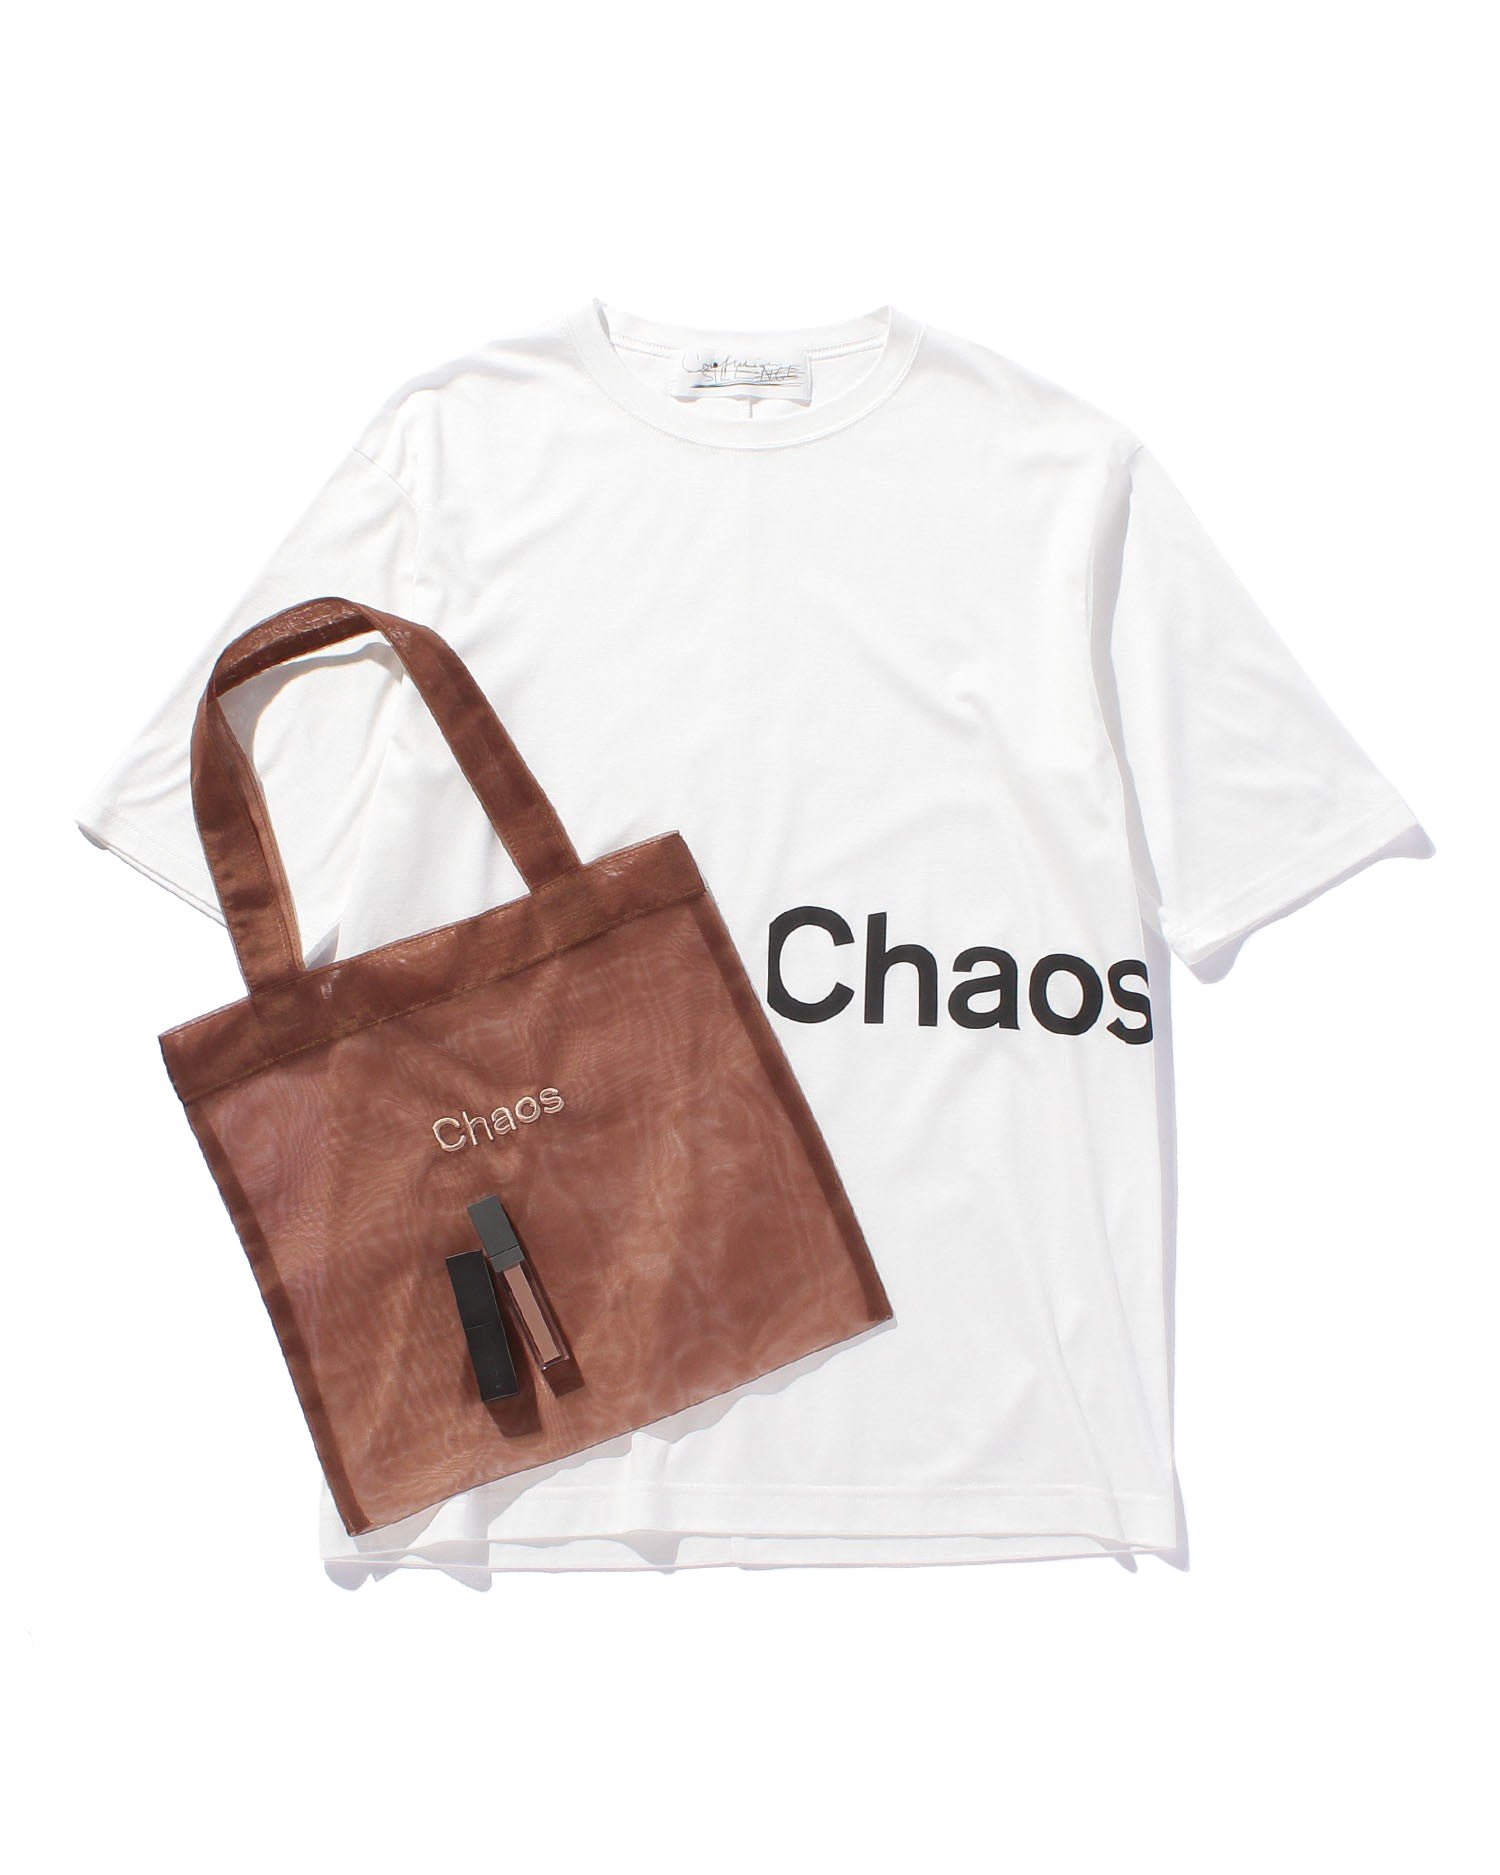 予約終了】Chaos & THREE for AMARC ロゴTシャツ＆コフレ【AMARC 